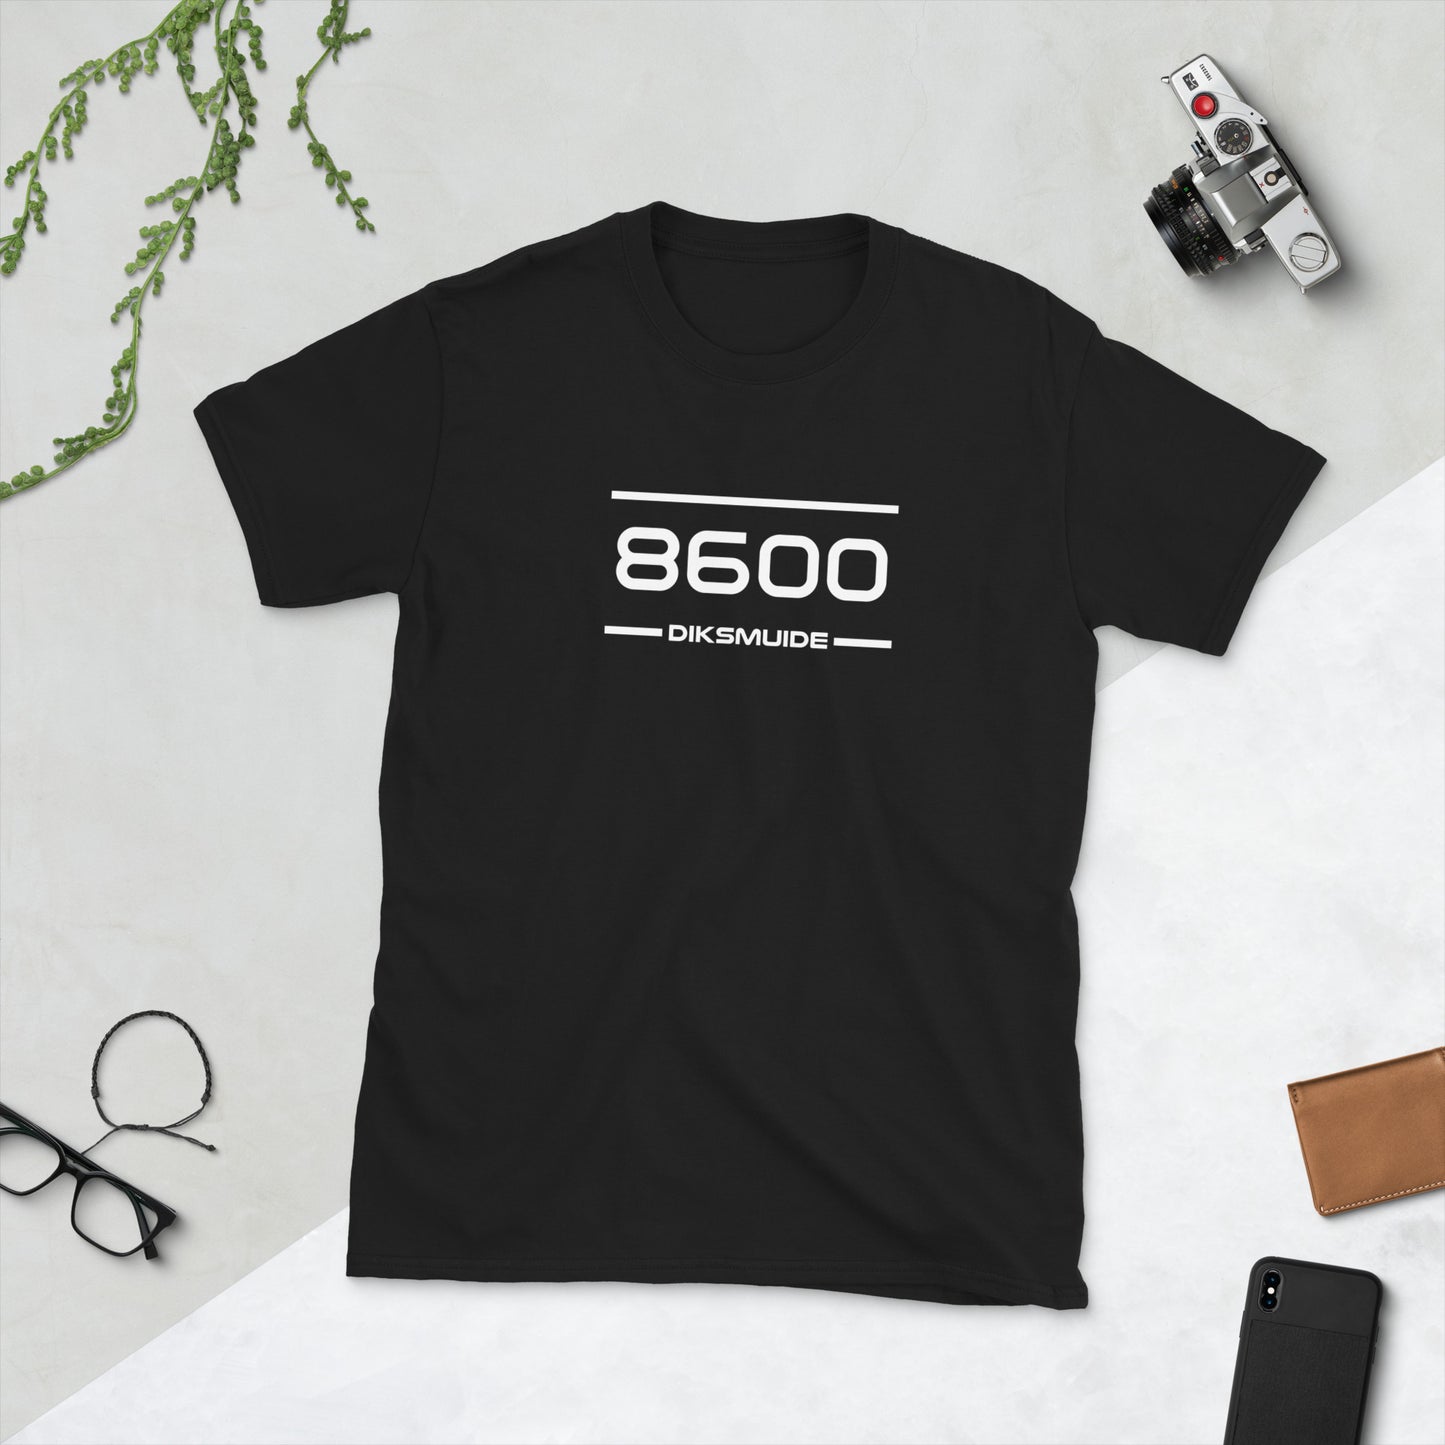 Tshirt - 8600 - Diksmuide